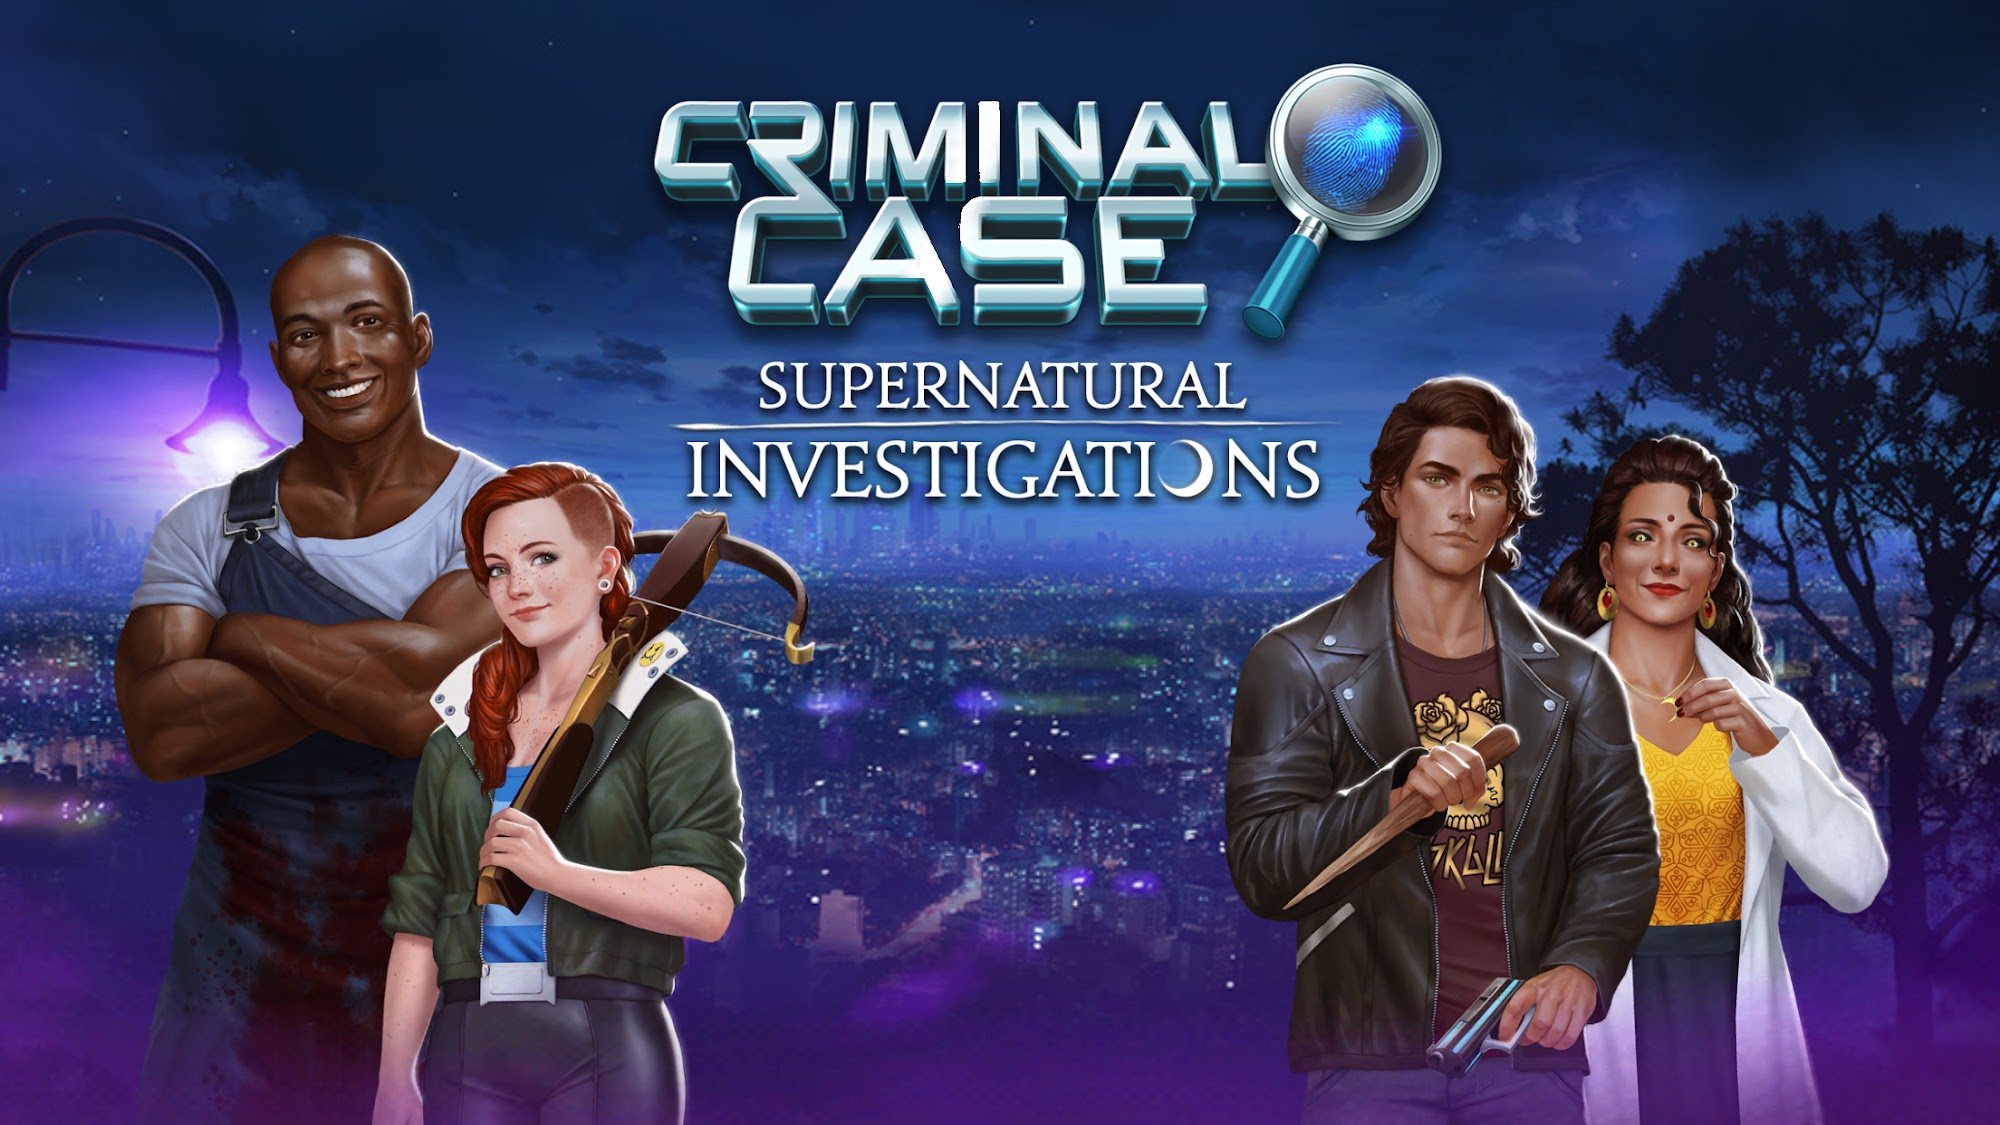 Télécharger Criminal Case: Supernatural Investigations pour Android gratuit.